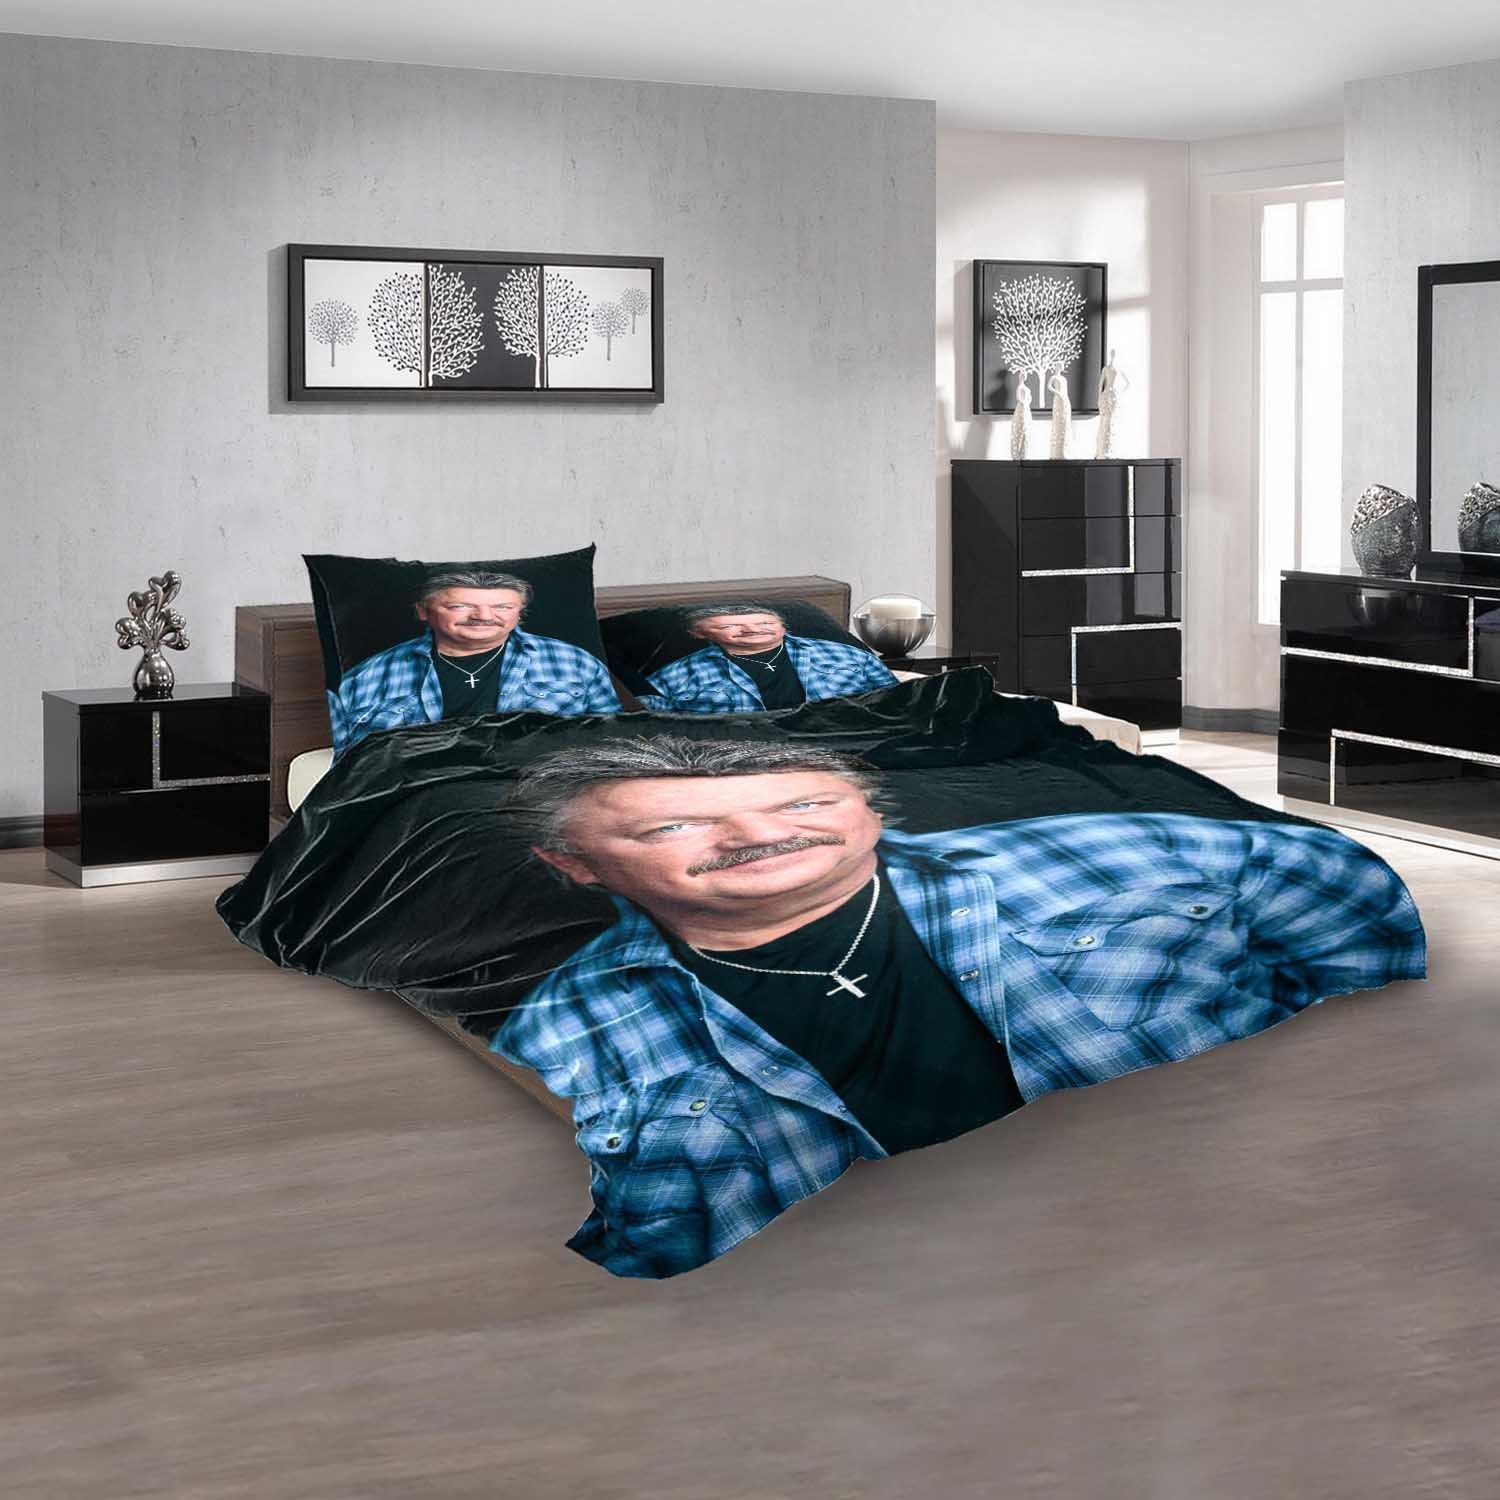 Famous Person Joe Diffie D Bedding Sets